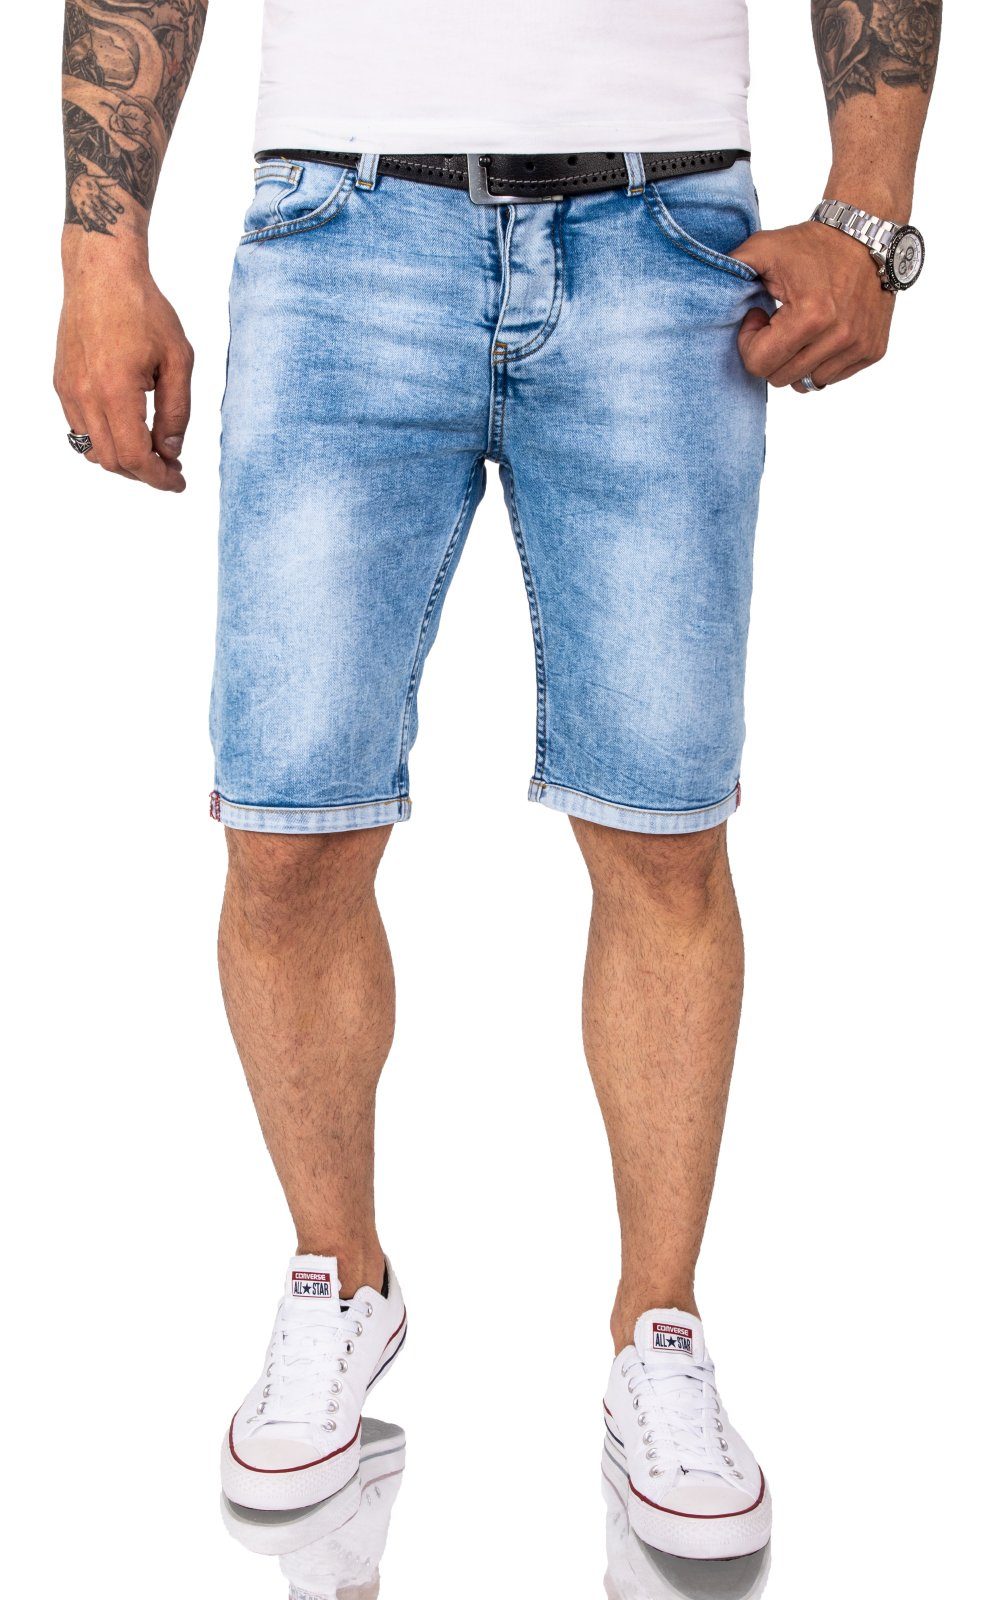 Herren Jeans Shorts online kaufen | OTTO